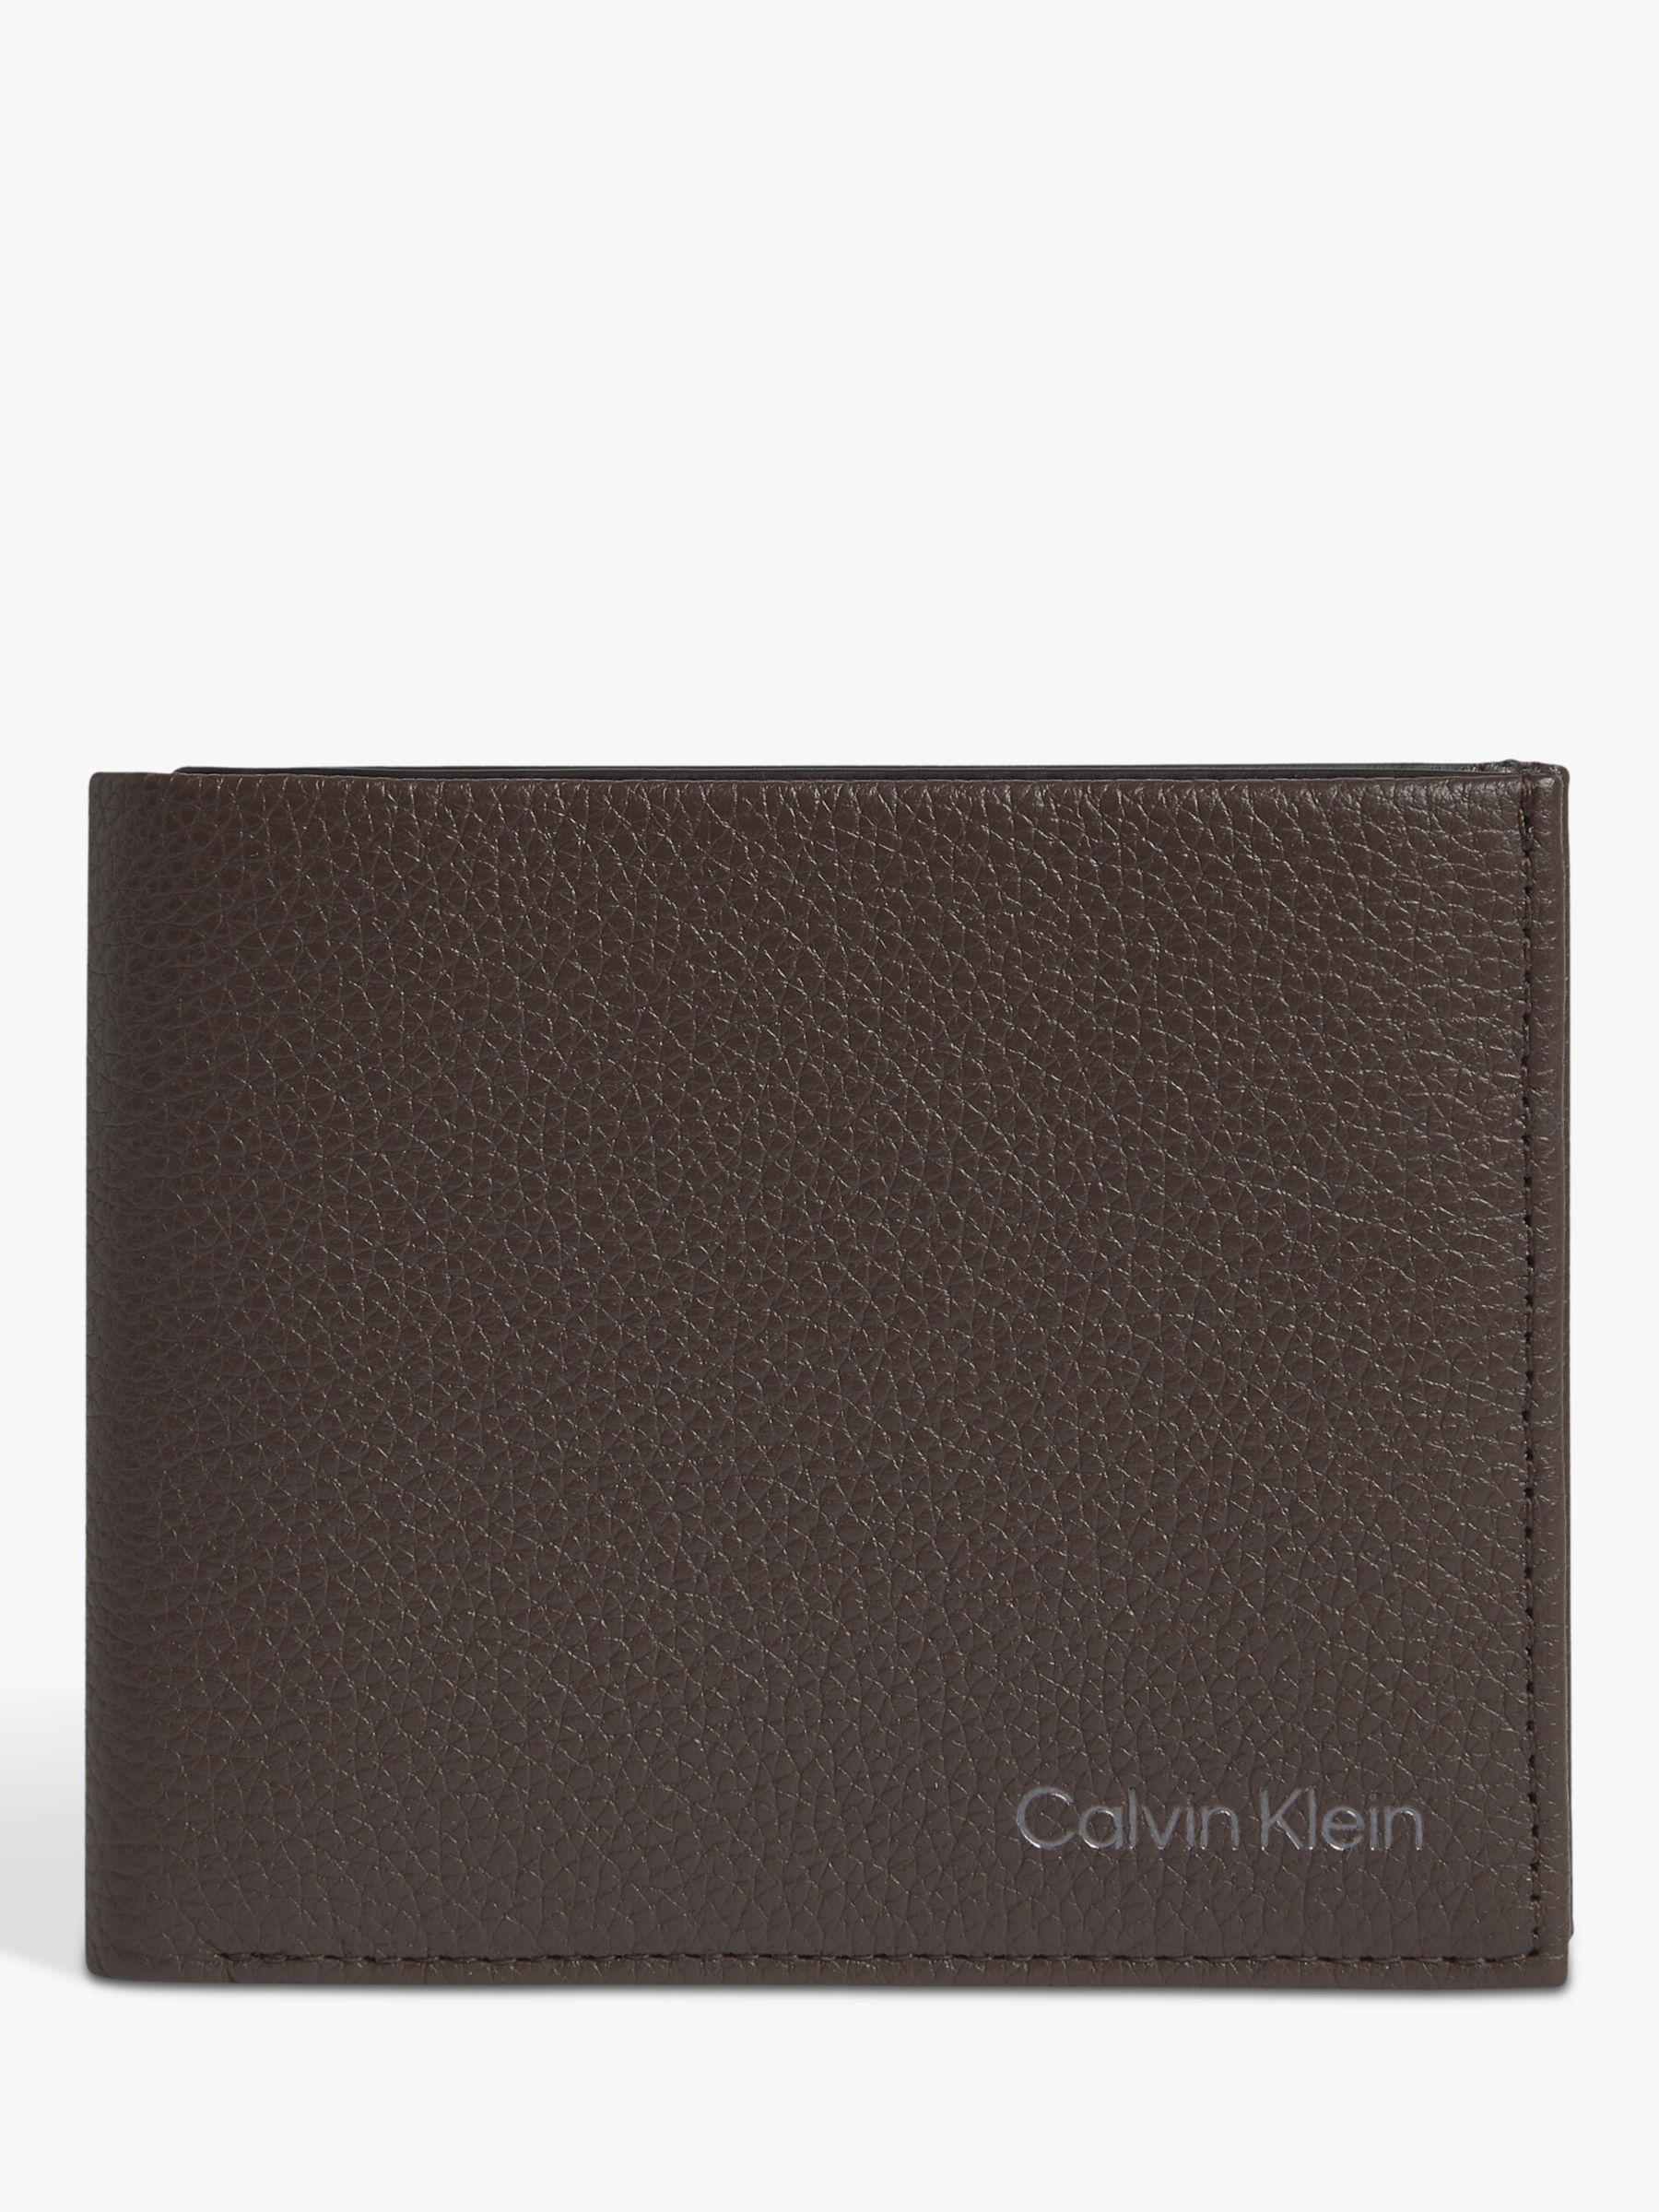 Calvin Klein Warmth Leather Billfold Wallet, Dark Brown